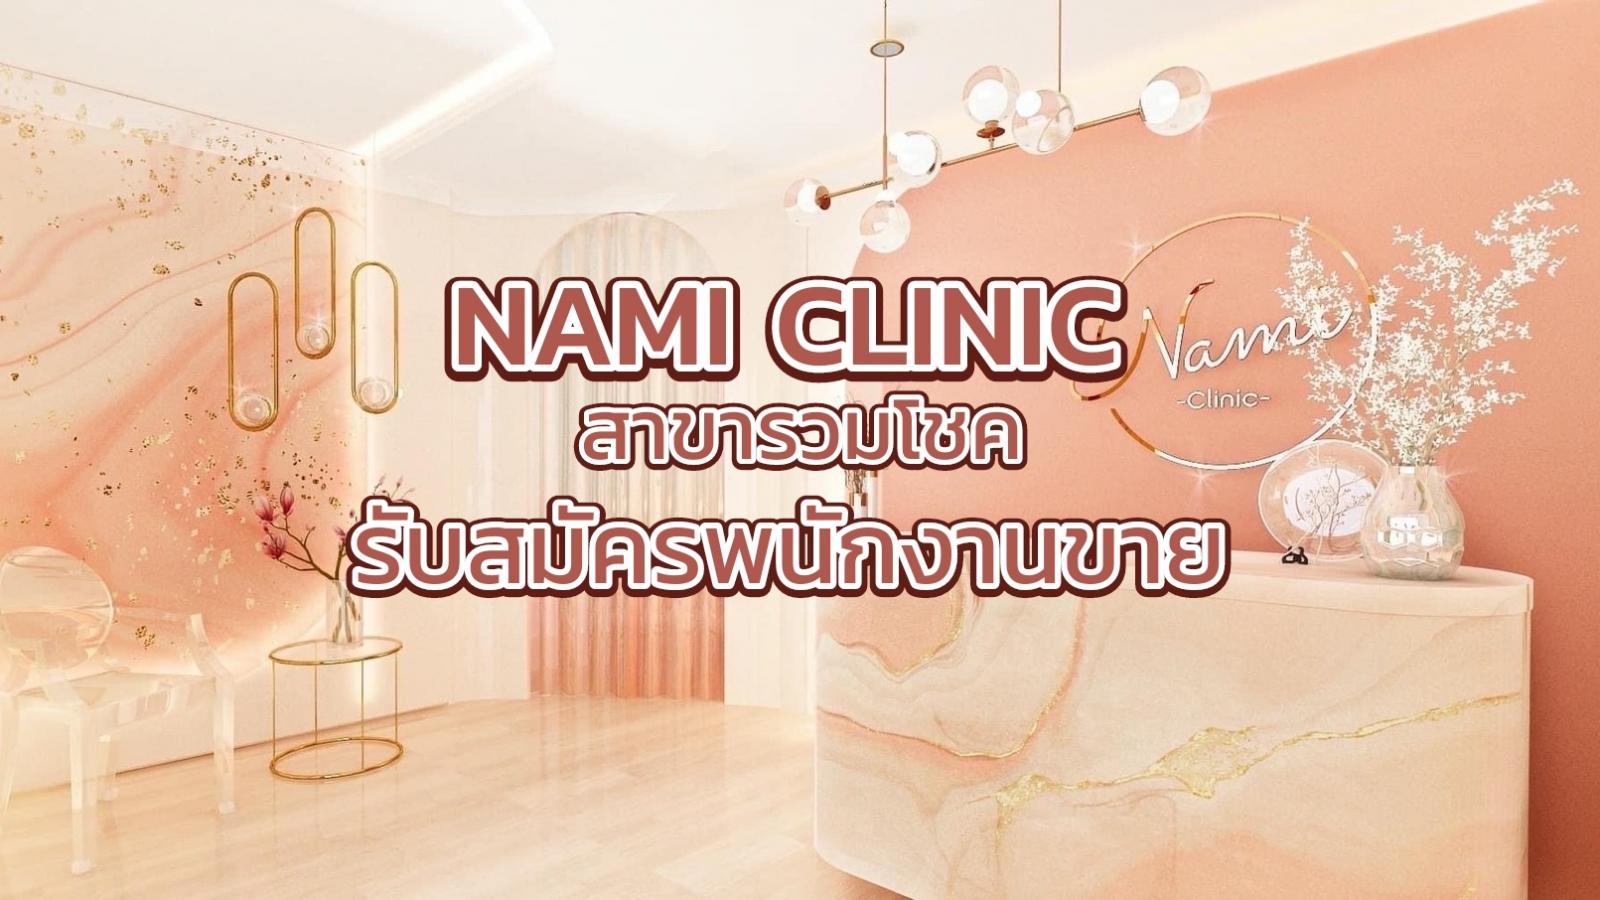 Nami Clinic นามิ คลินิก เสริมความงาม เชียงใหม่